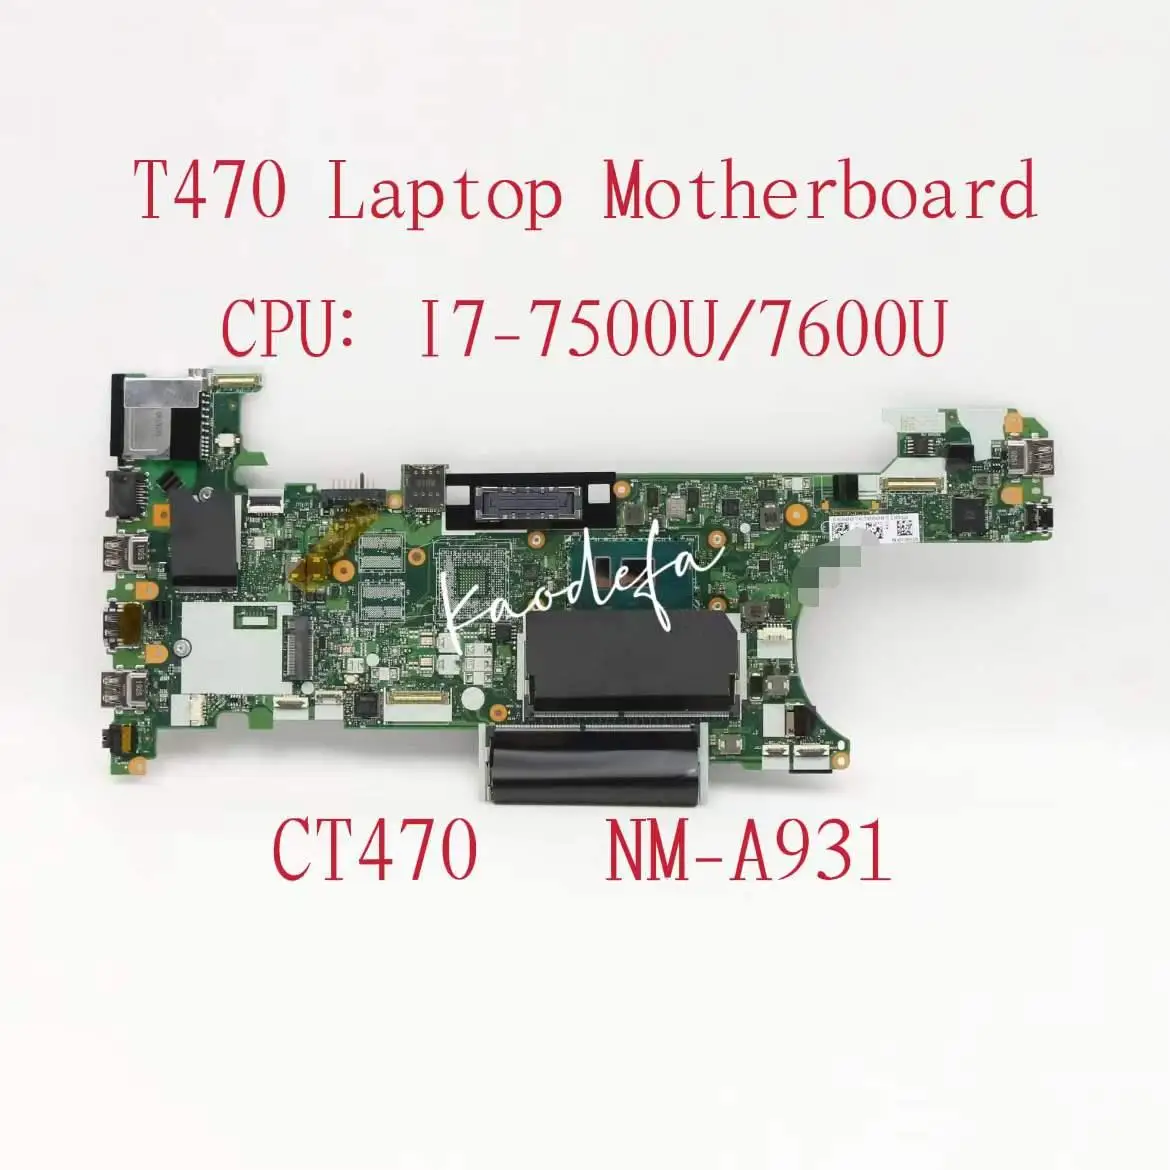 

NM-A931 For Lenovo Thinkpad T470 Laptop Motherboard CPU:I7-7500U/7600U DDR4 FRU:01LV683 01HX668 01HX664 01HX669 01HX665 01AX974